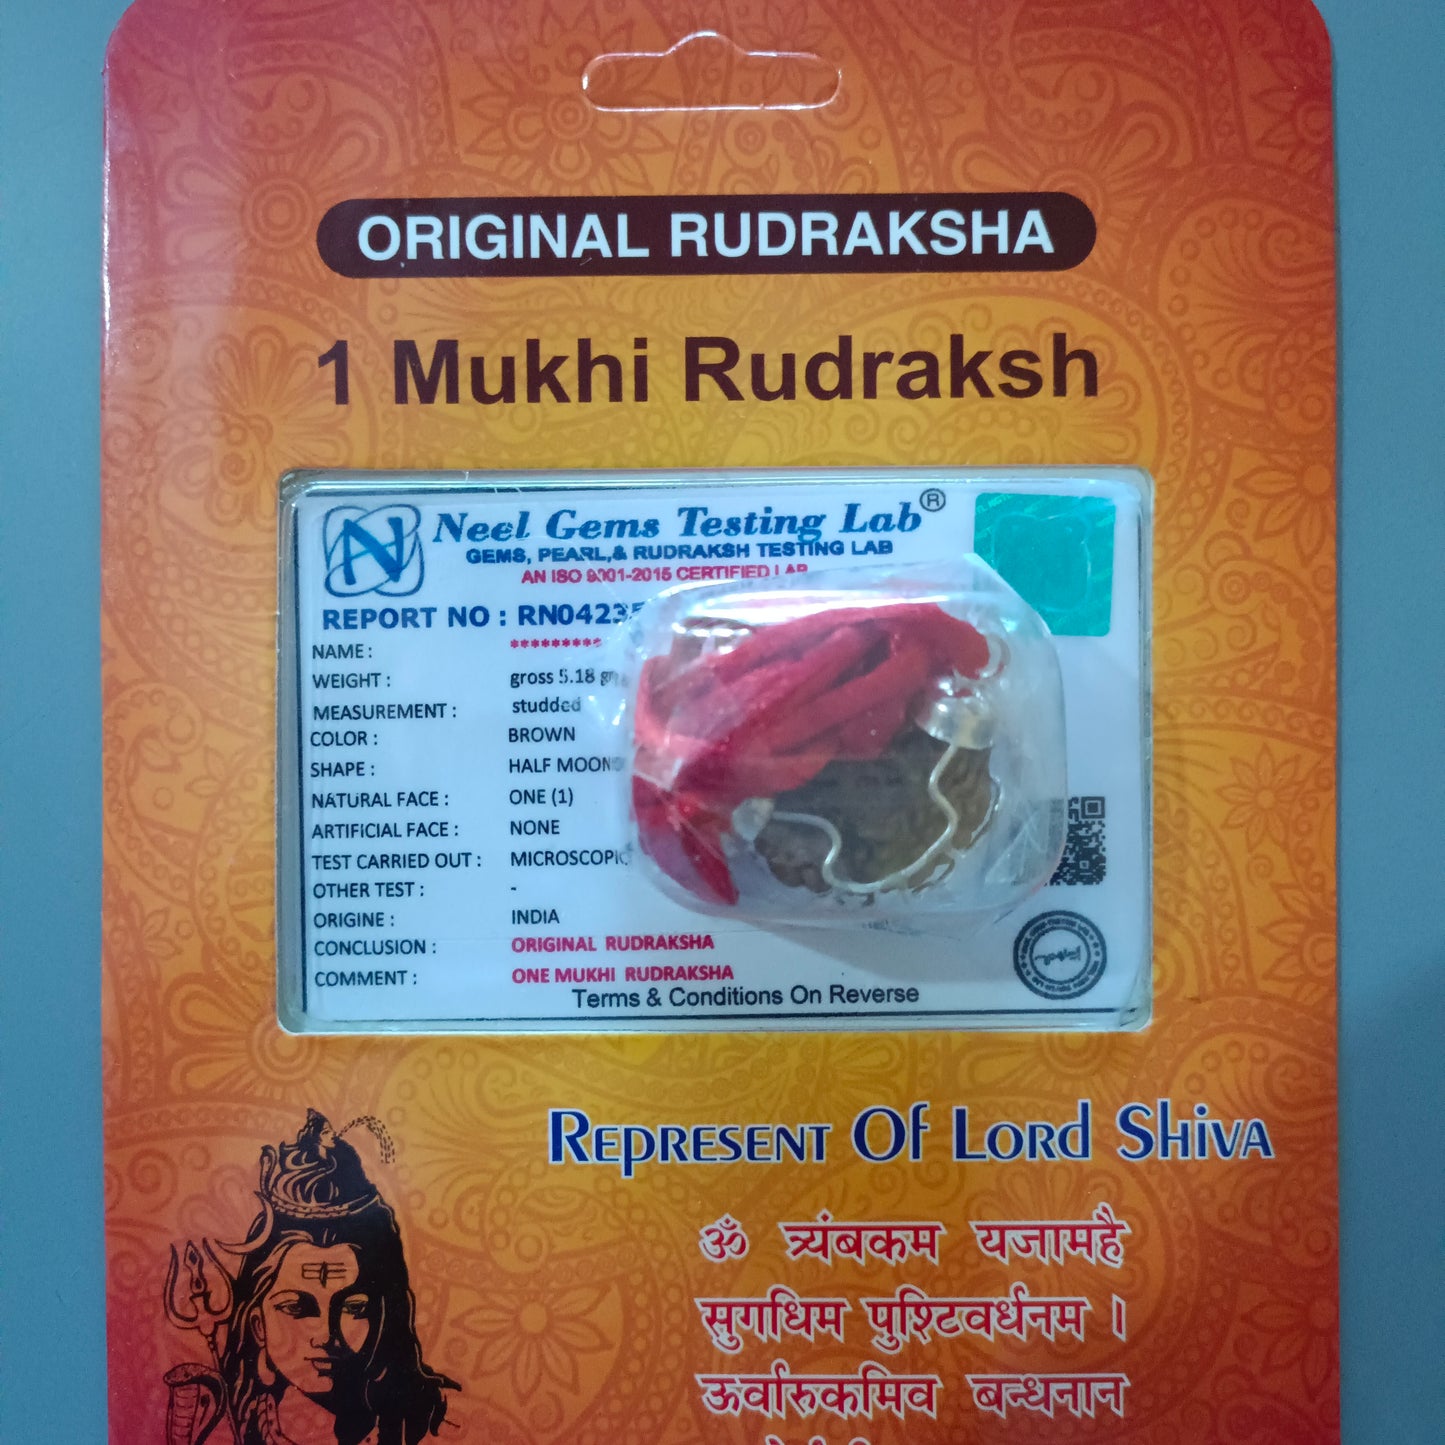 Buy Ek Mukhi Rudraksha Original | original ek mukhi rudraksha | Ek mukhi rudraksha price | Ek mukhi rudraksha benefits | Ek mukhi rudraksha mala | Ek mukhi rudraksha bracelet | Ek mukhi rudraksha original price | Ek mukhi rudraksha pendant